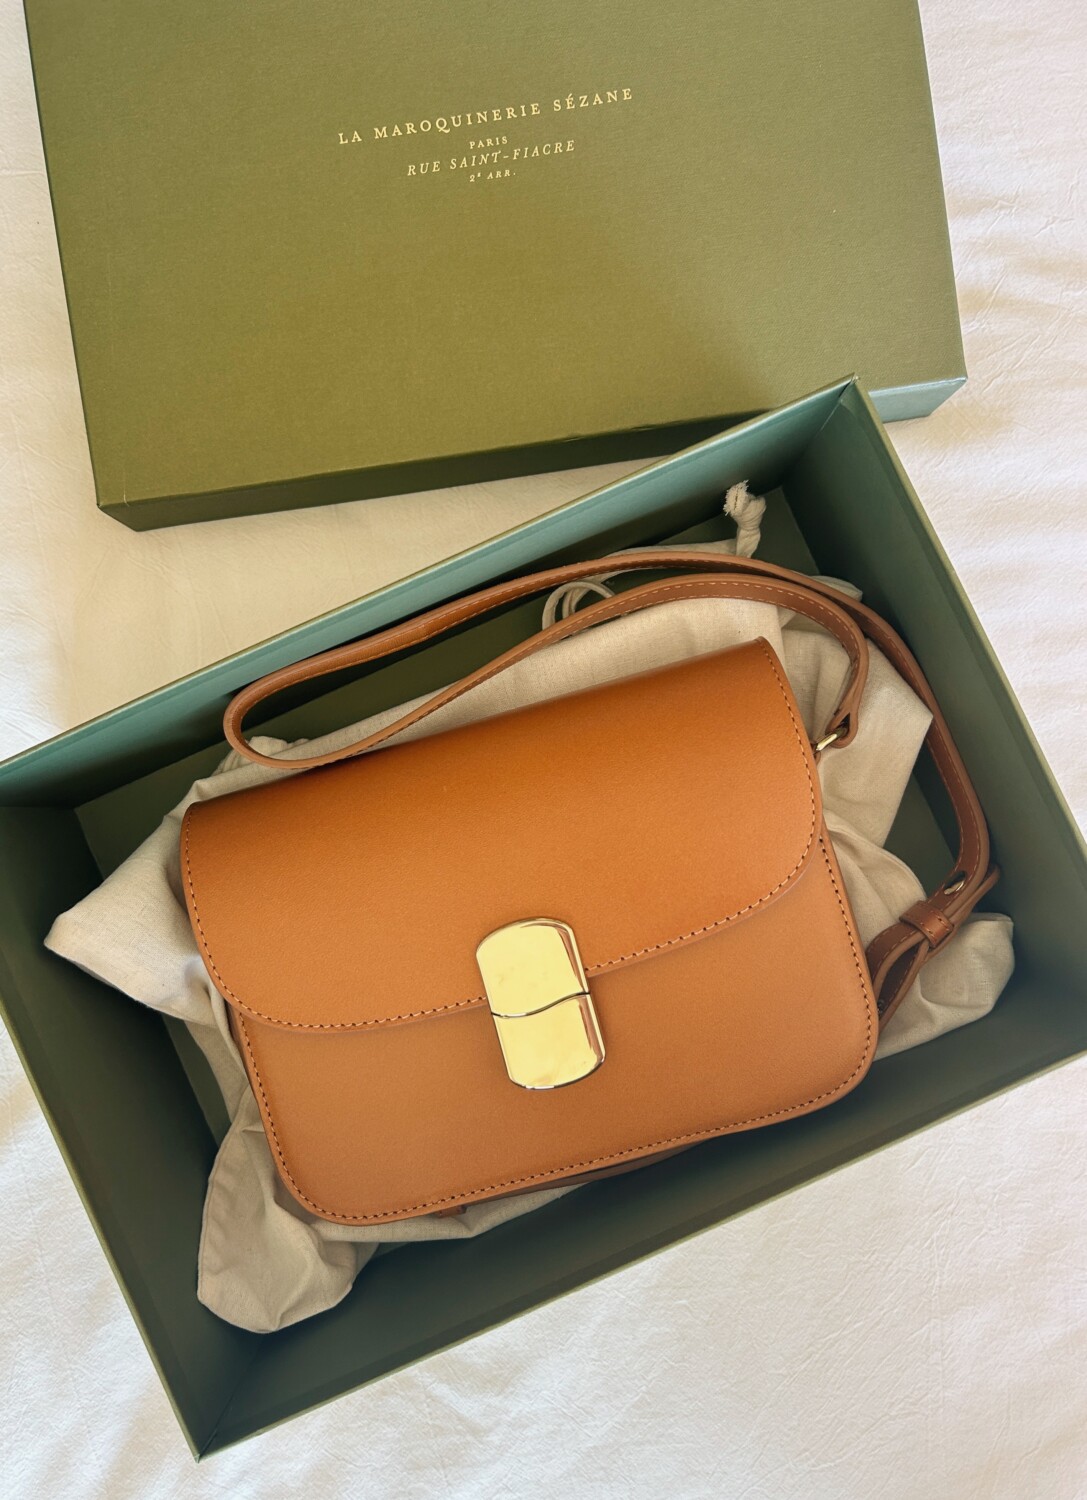 A Sézane Mini Milo Bag inside of its gift box